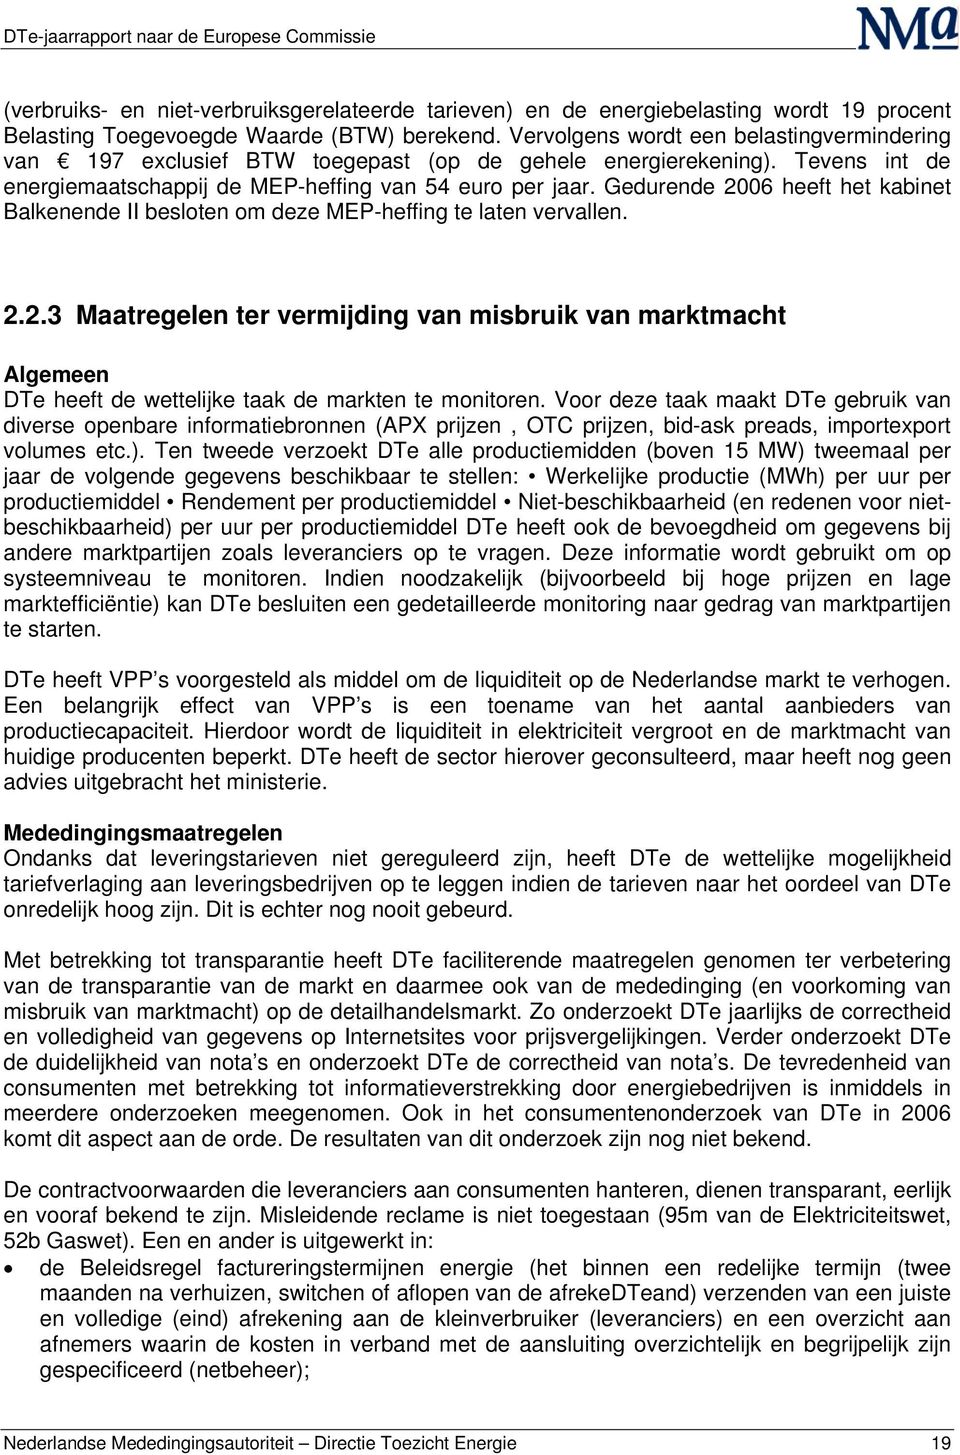 Gedurende 2006 heeft het kabinet Balkenende II besloten om deze MEP-heffing te laten vervallen. 2.2.3 Maatregelen ter vermijding van misbruik van marktmacht Algemeen DTe heeft de wettelijke taak de markten te monitoren.